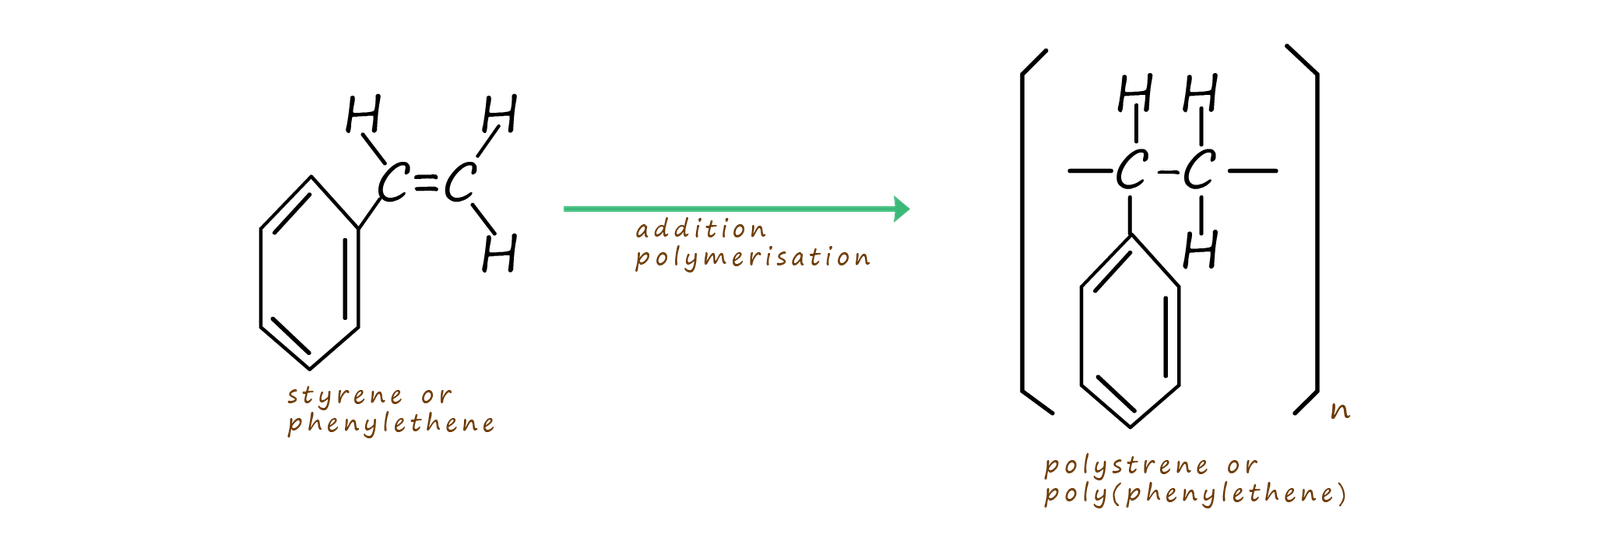 the monomer styrene polymerising to form polystyrene